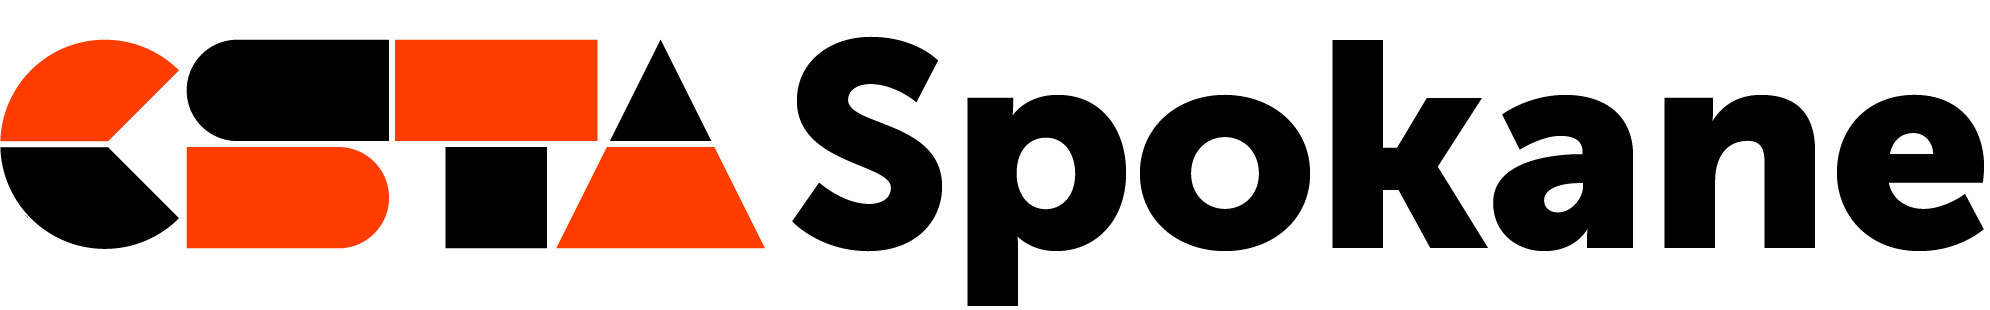 CSTA Spokane logo